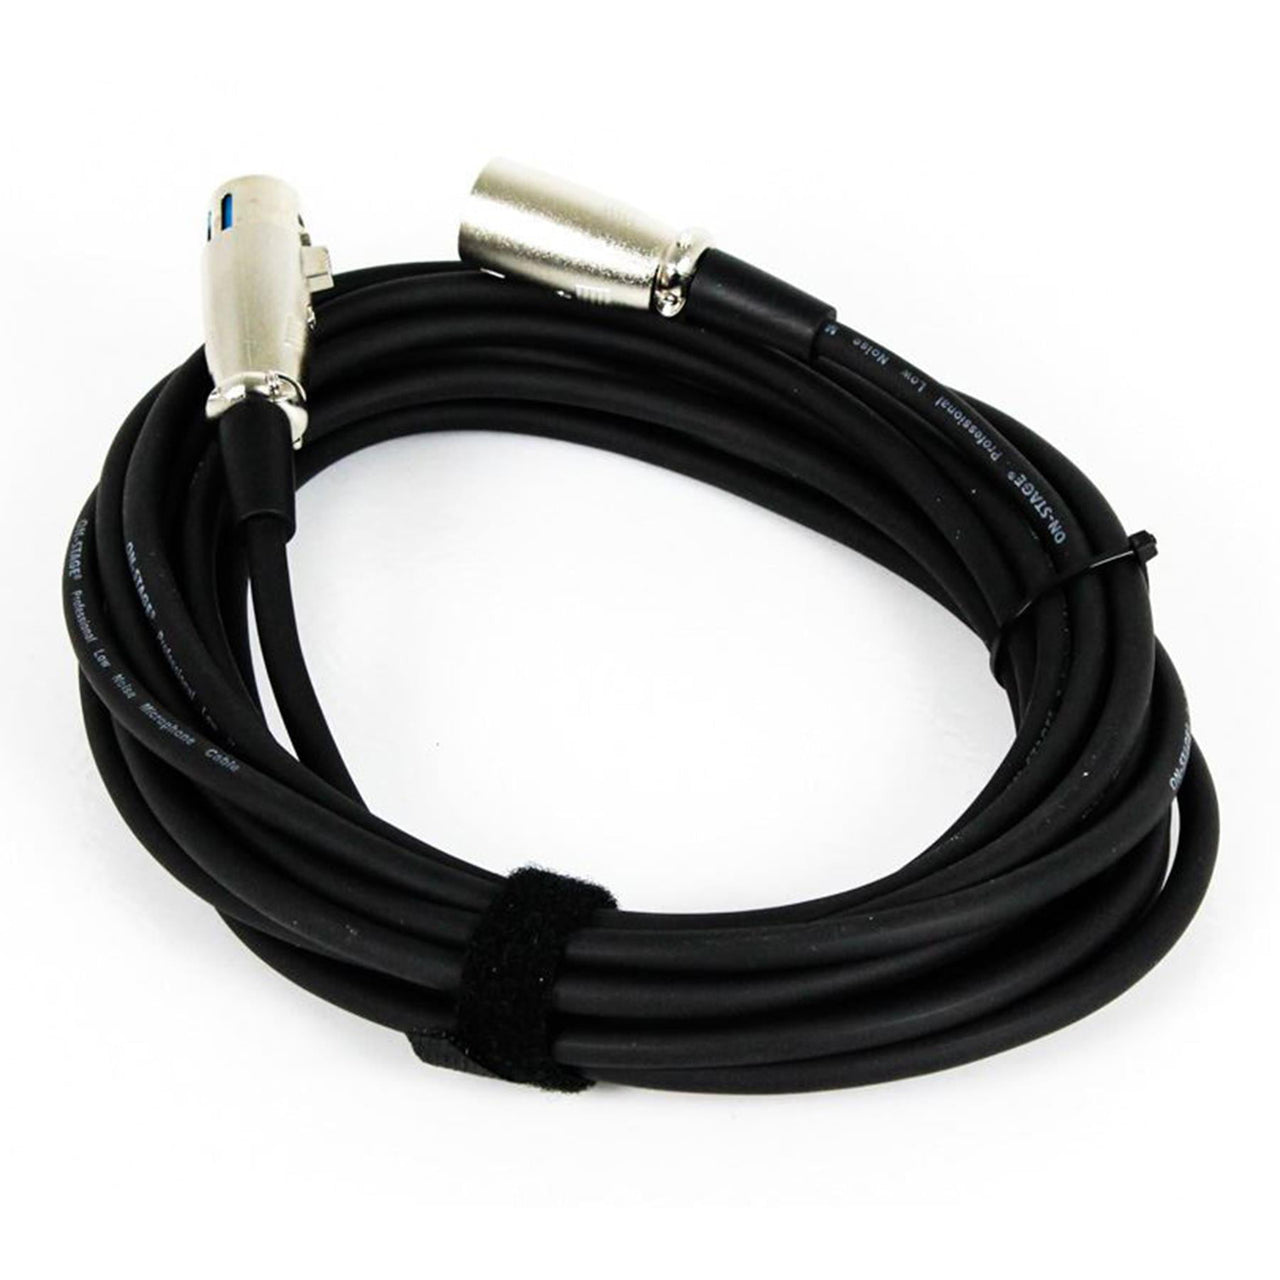 Focusrite Scarlett 2i2 3rd Gen USB Interface w/ 2 3-Foot XLR Cables Bundle